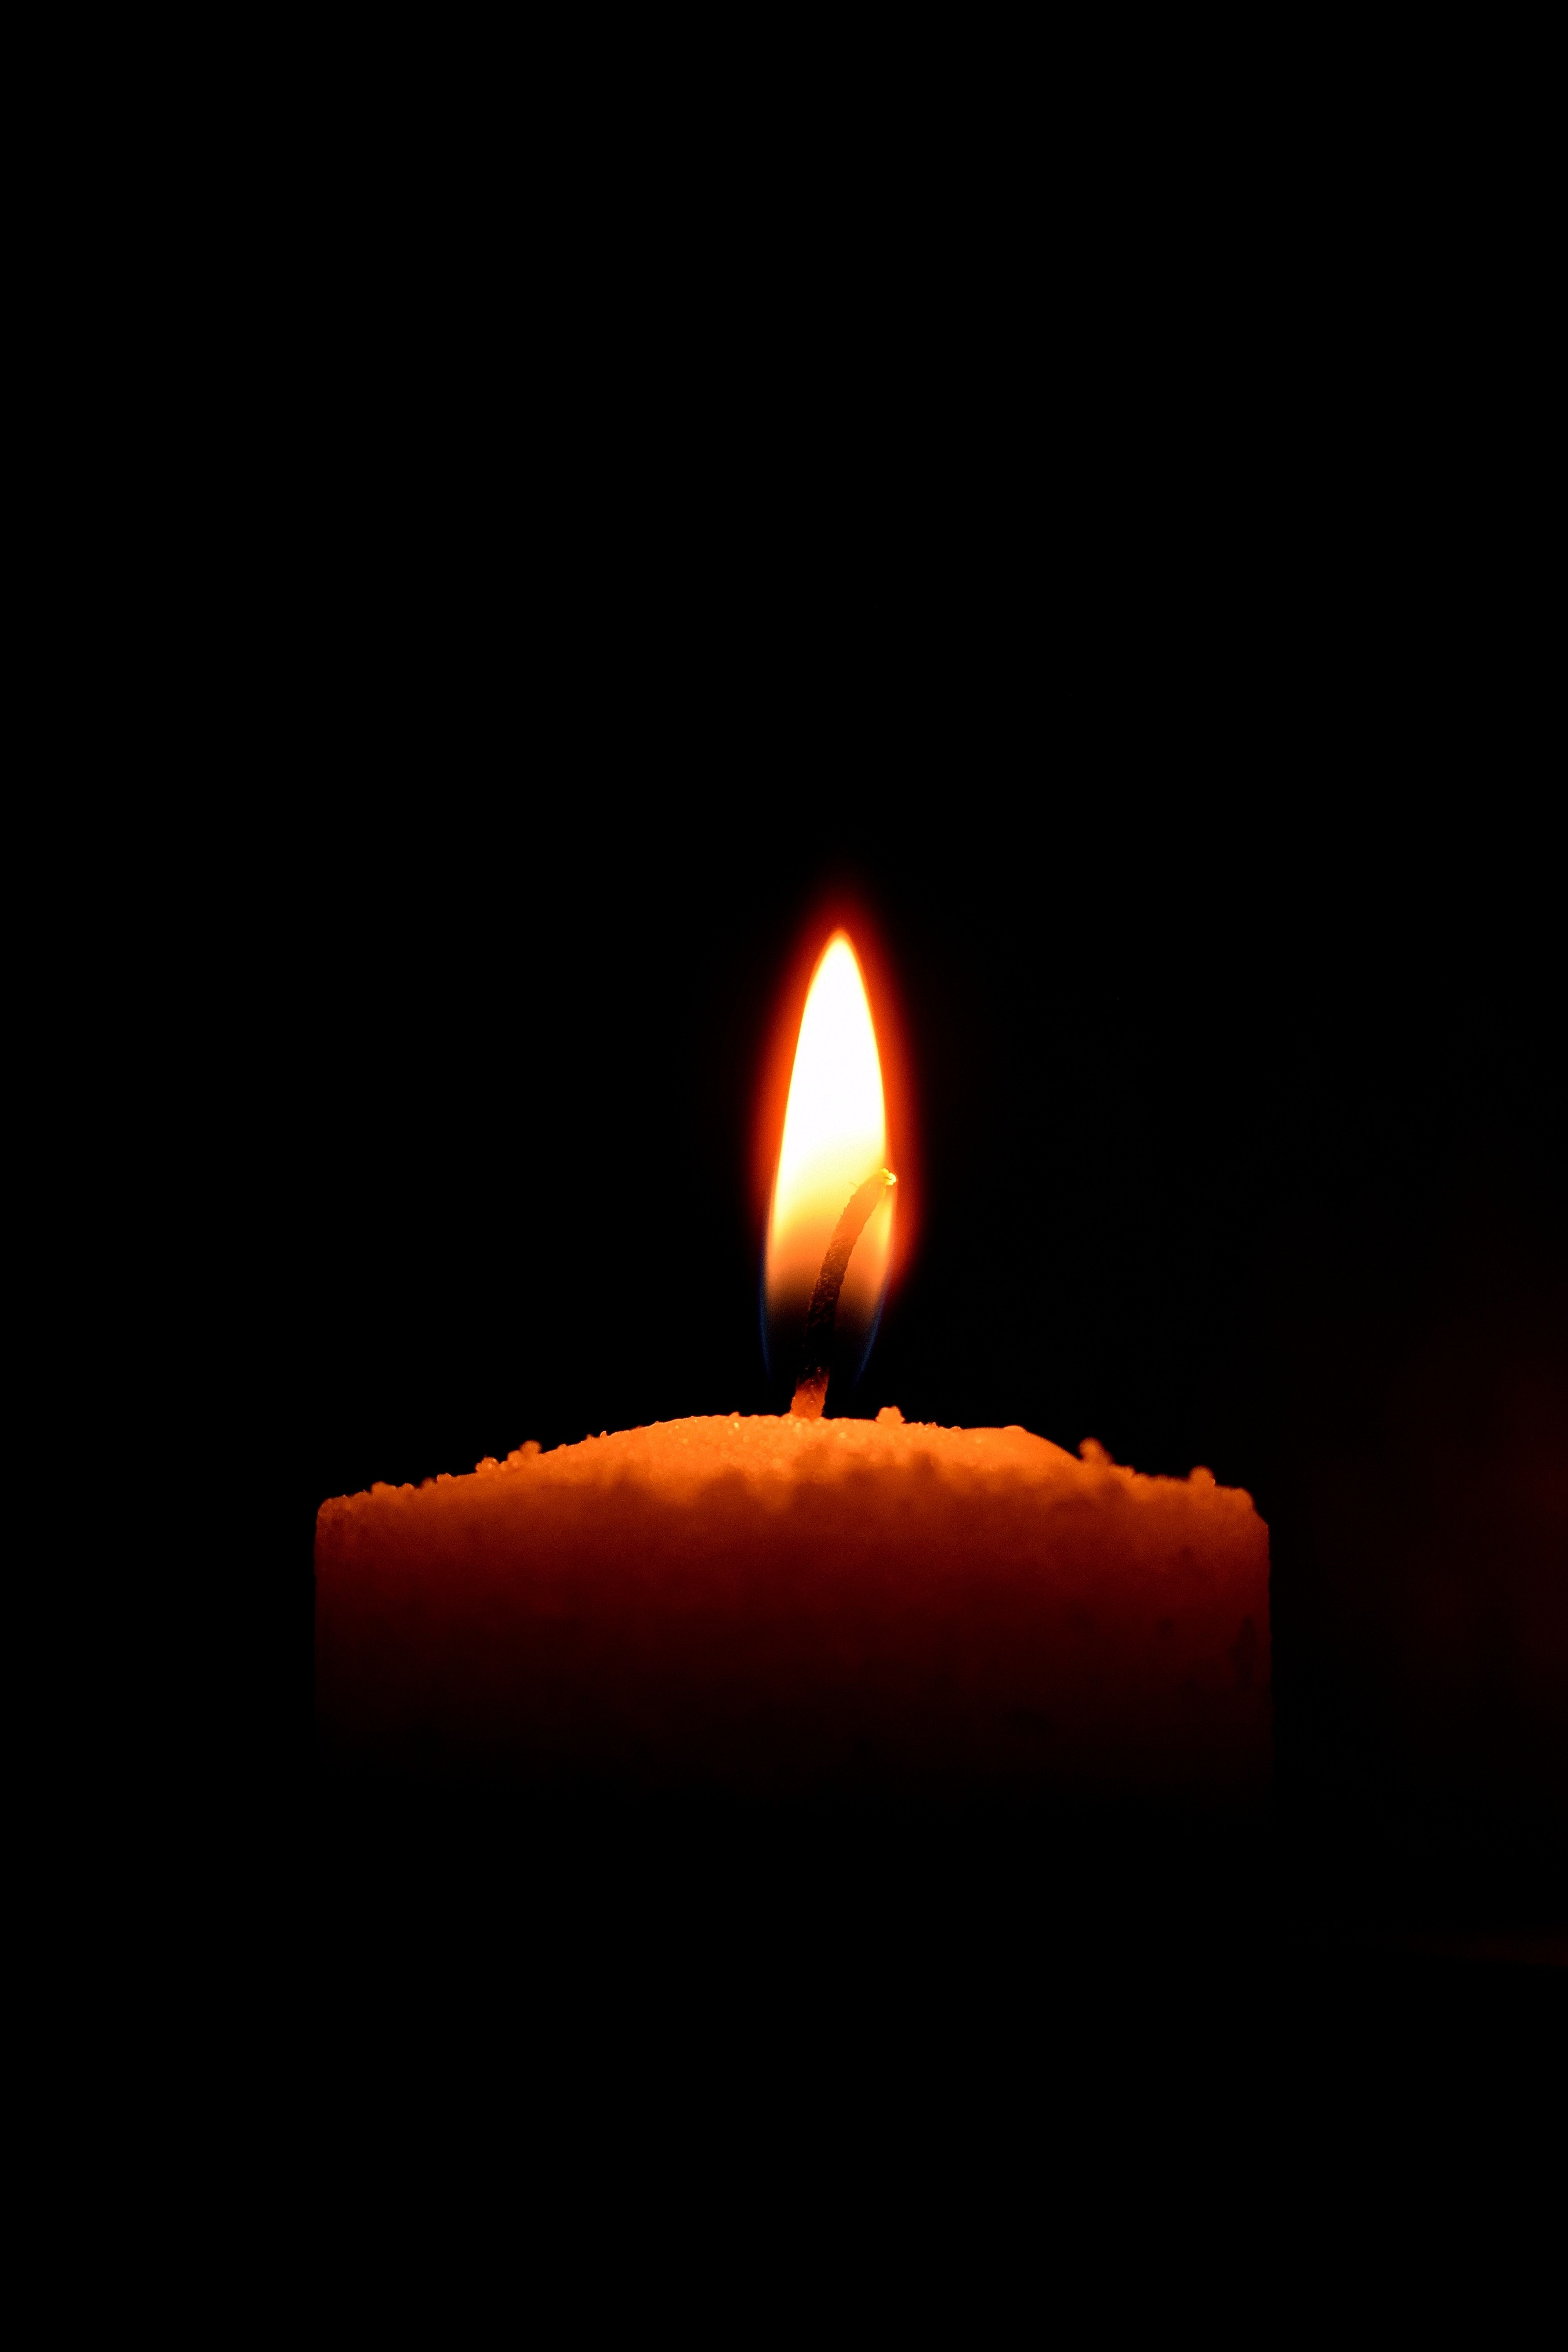 دانلود عکس غمگین شمع در پس زمینه مشکی برای تسليت 